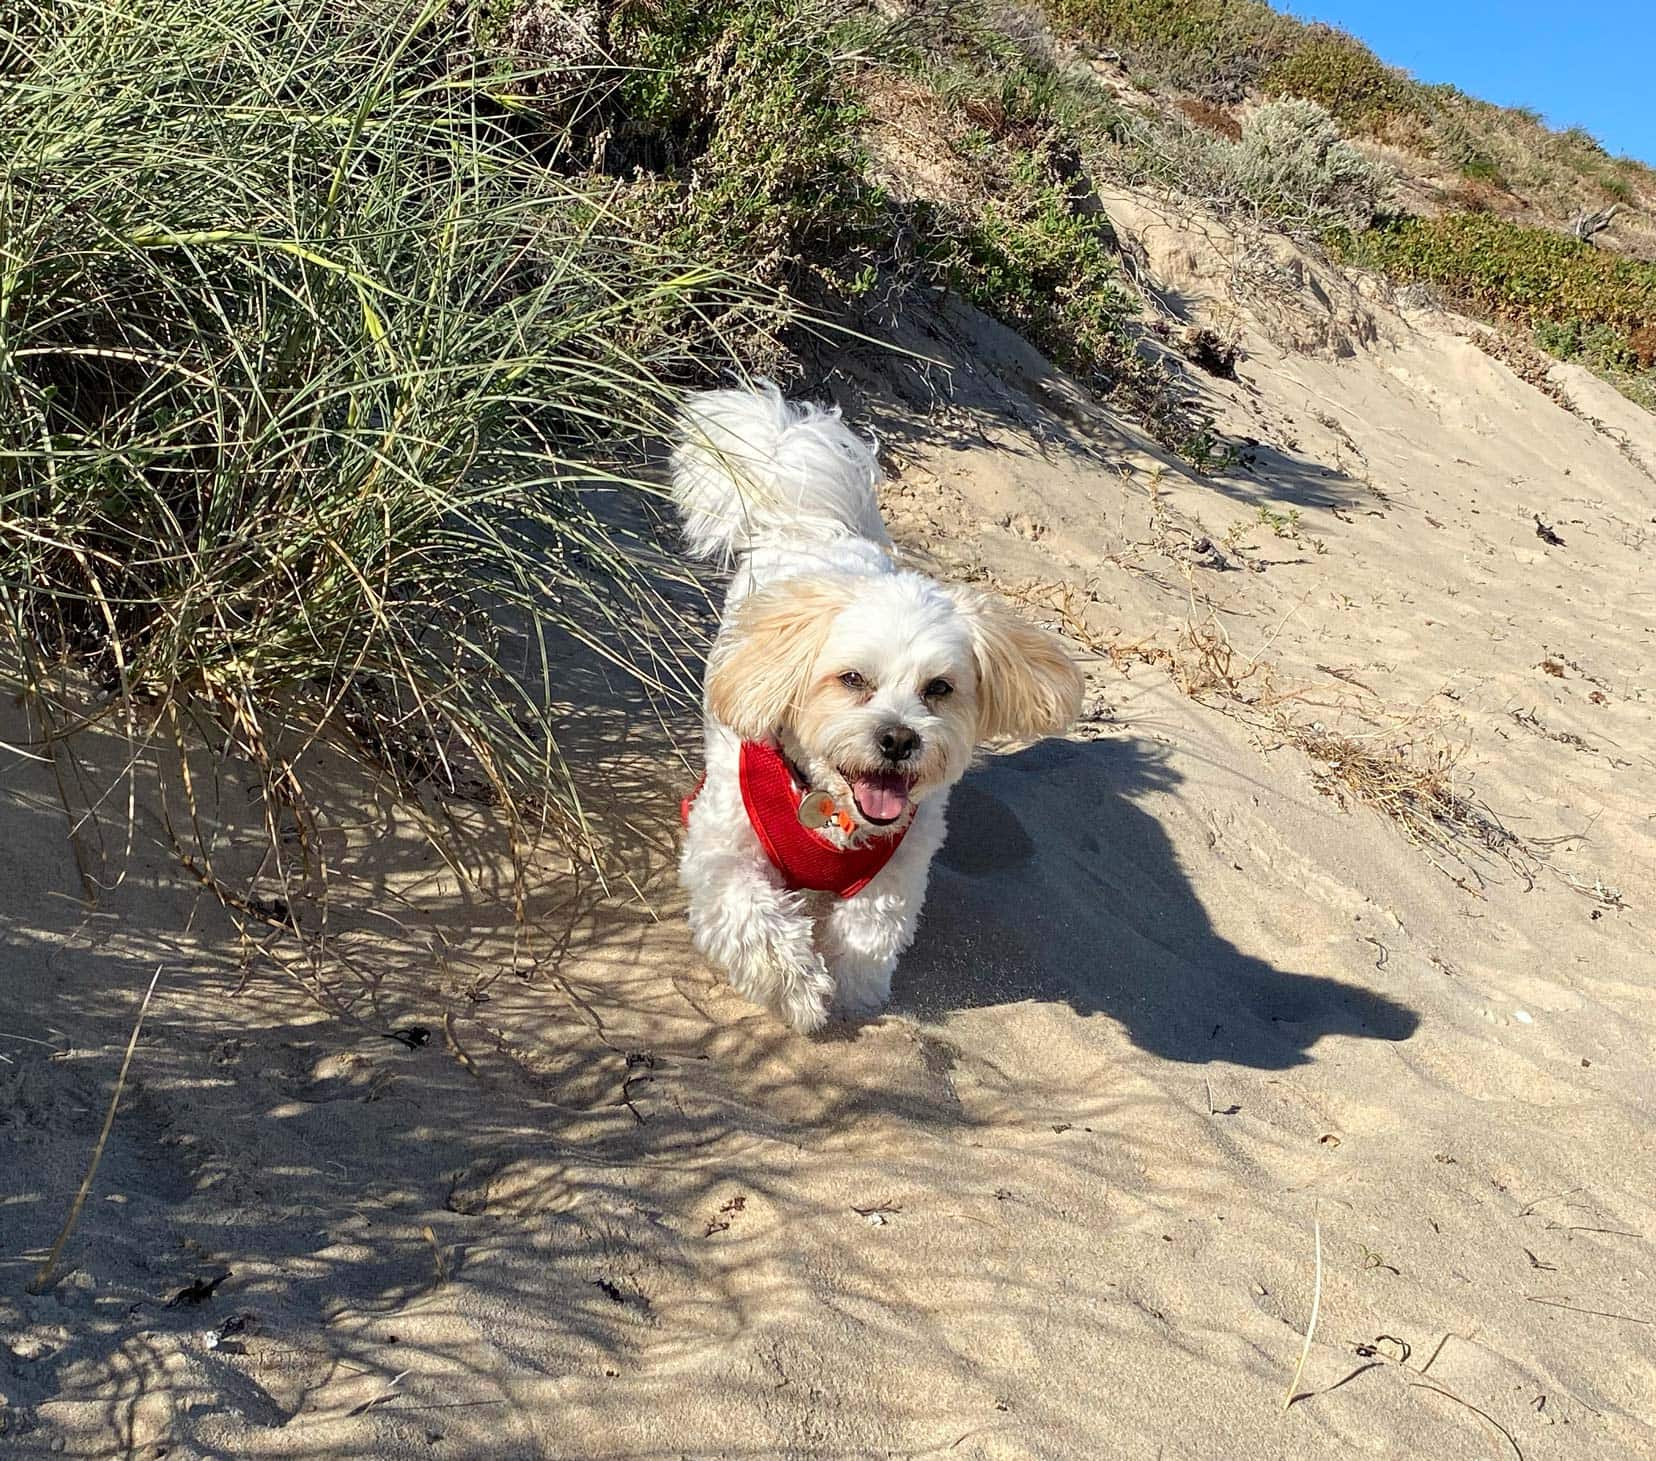 Housesitting-Teddy-on-beach small dog near grass and sand